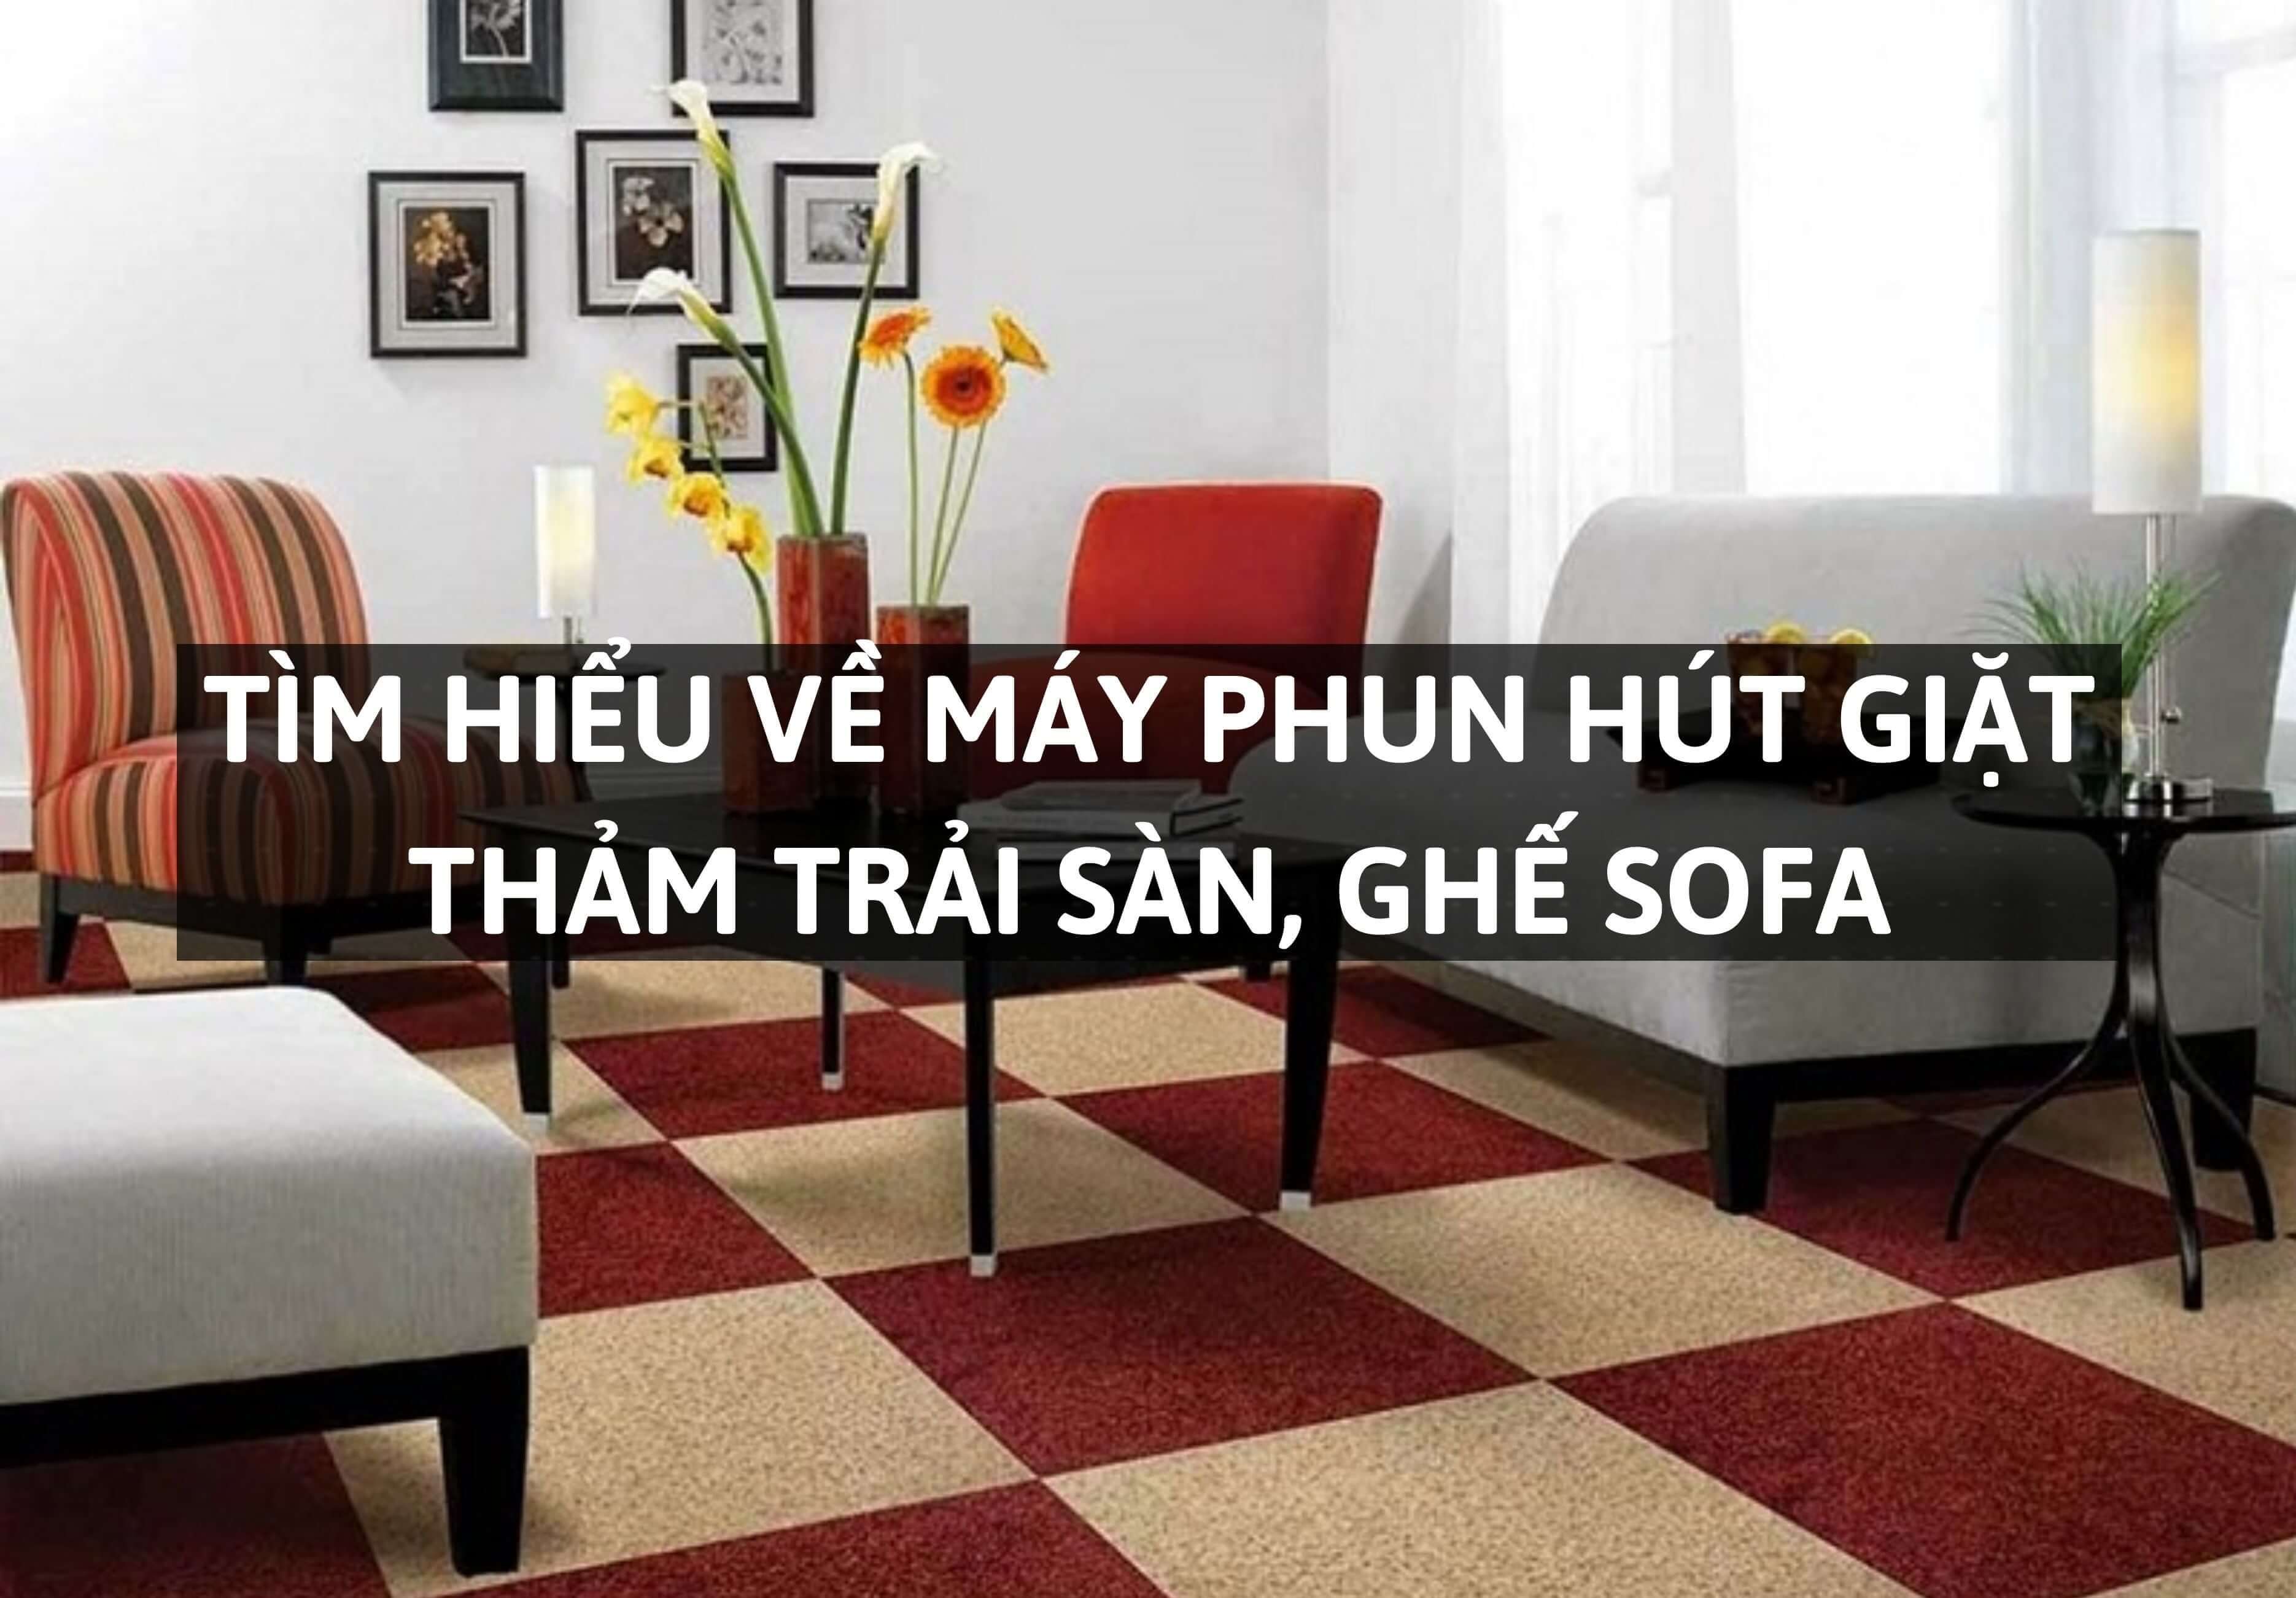 Tìm hiểu về máy phun hút giặt thảm trải sàn, ghế sofa